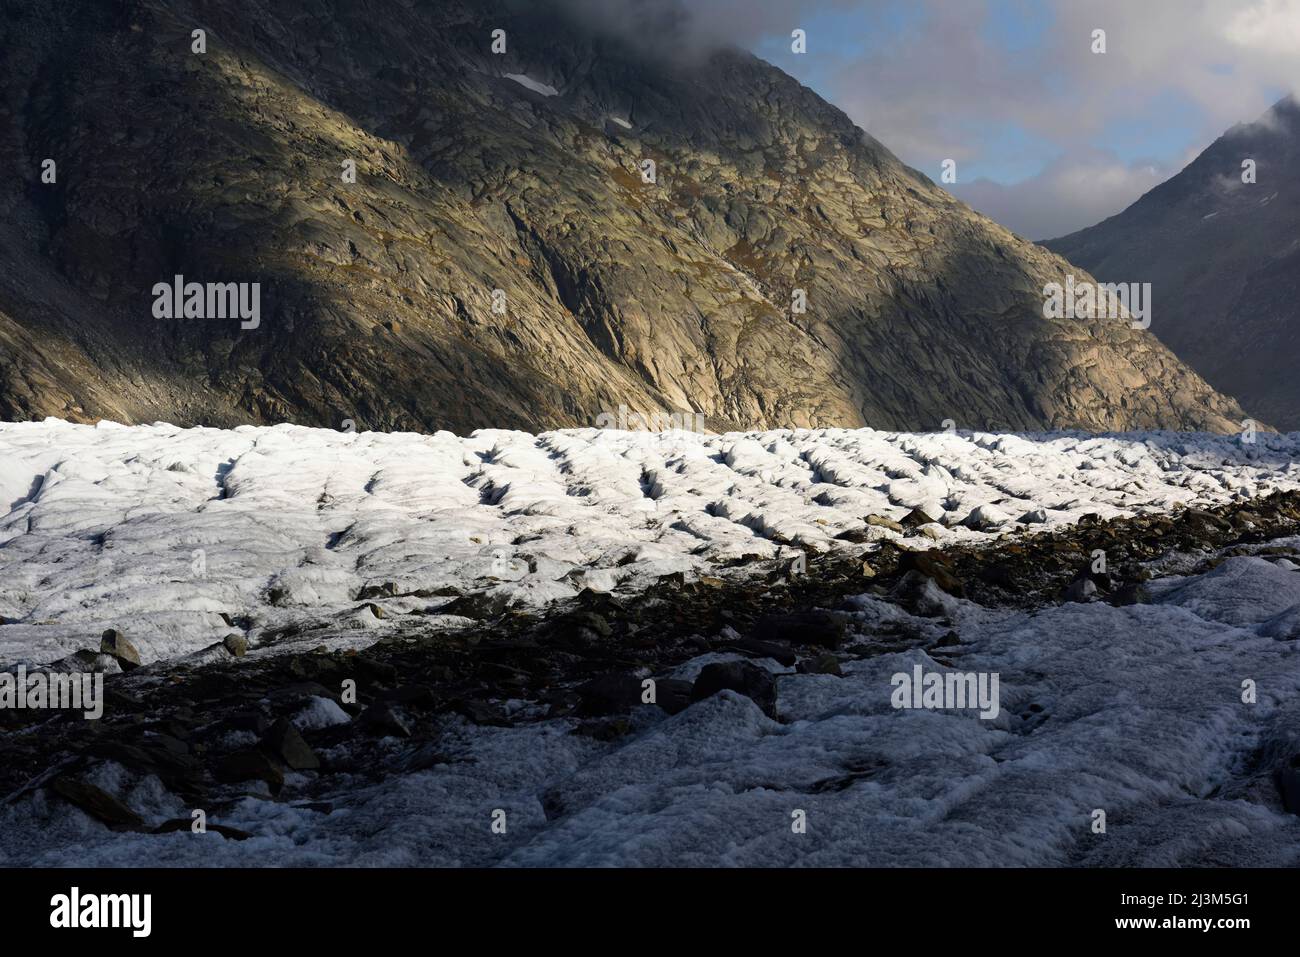 Le paysage du glacier d'Aletsch.; glacier d'Aletsch, Fiesch, Suisse. Banque D'Images